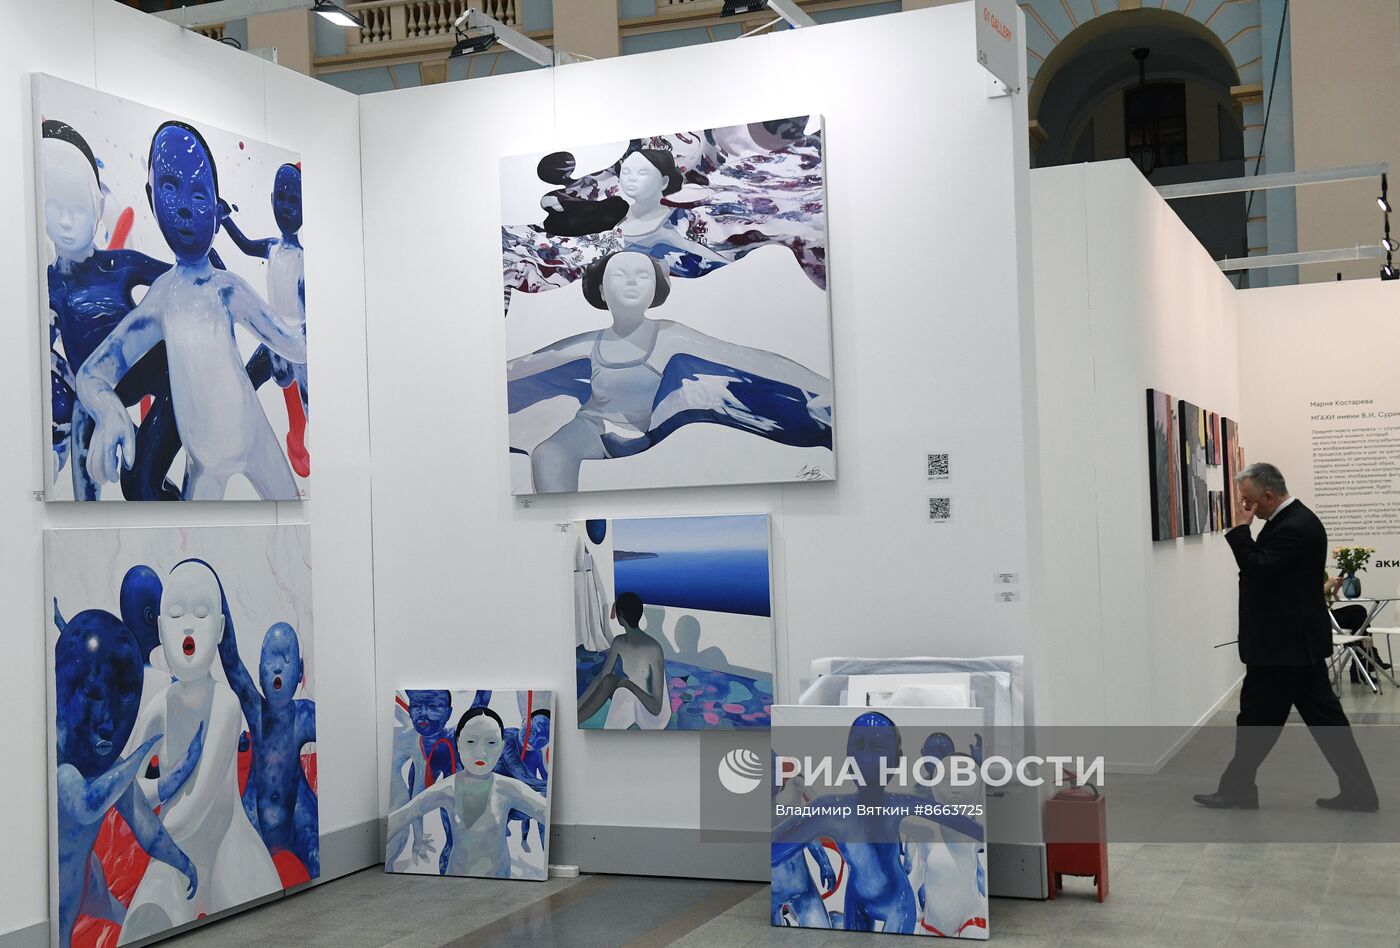 Ярмарка современного, классического и ювелирного искусства "Арт Москва"